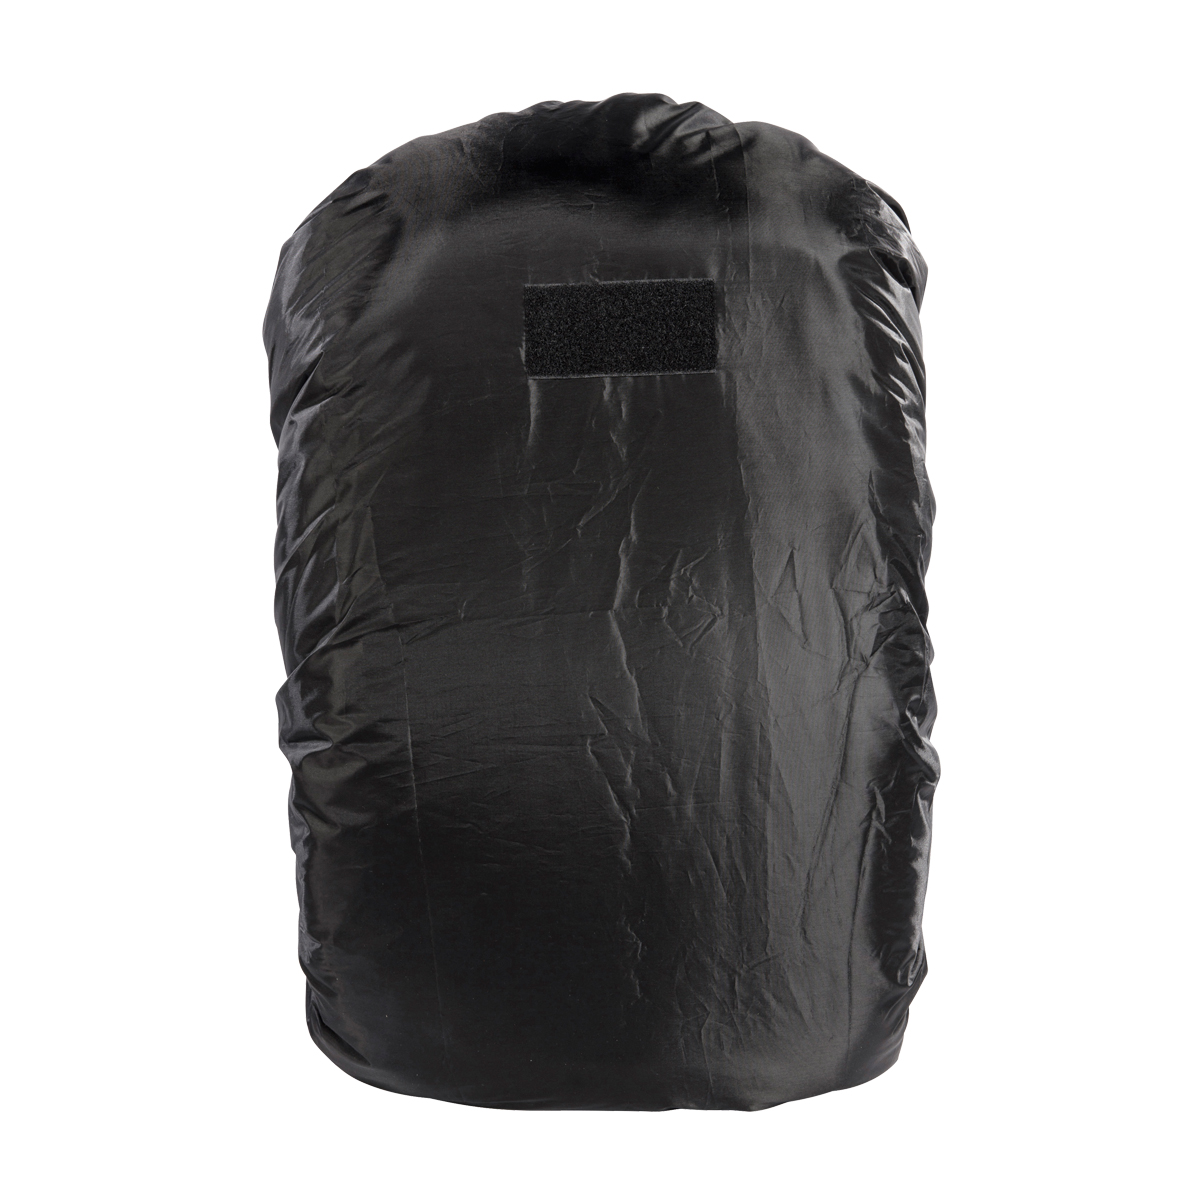 Produktbild von Tasmanian Tiger Raincover L, schwarz - Regenhülle für 40 - 60 Liter Rucksack